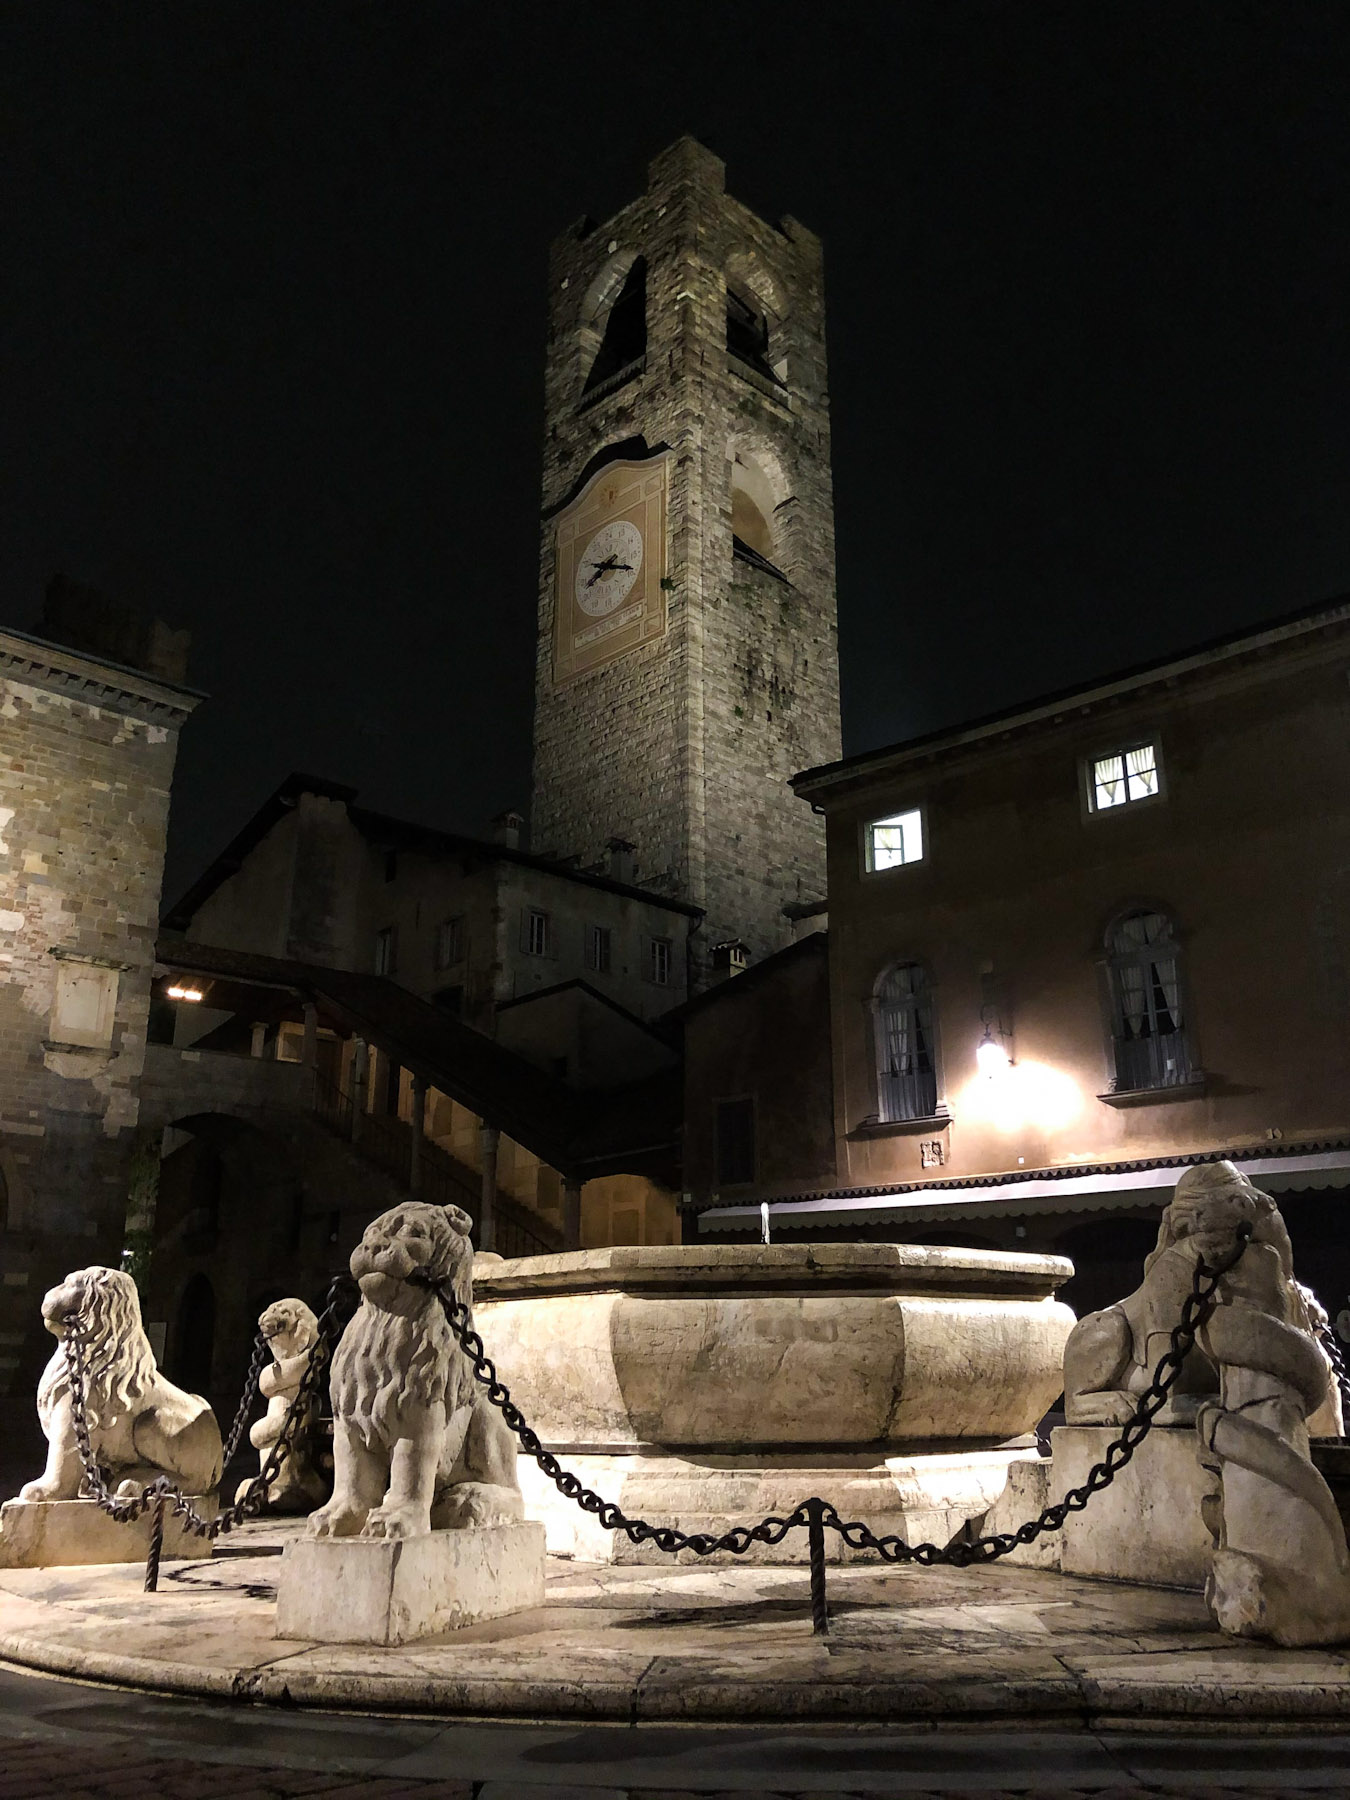 Piazza Vecchia, Bergamo, Italy